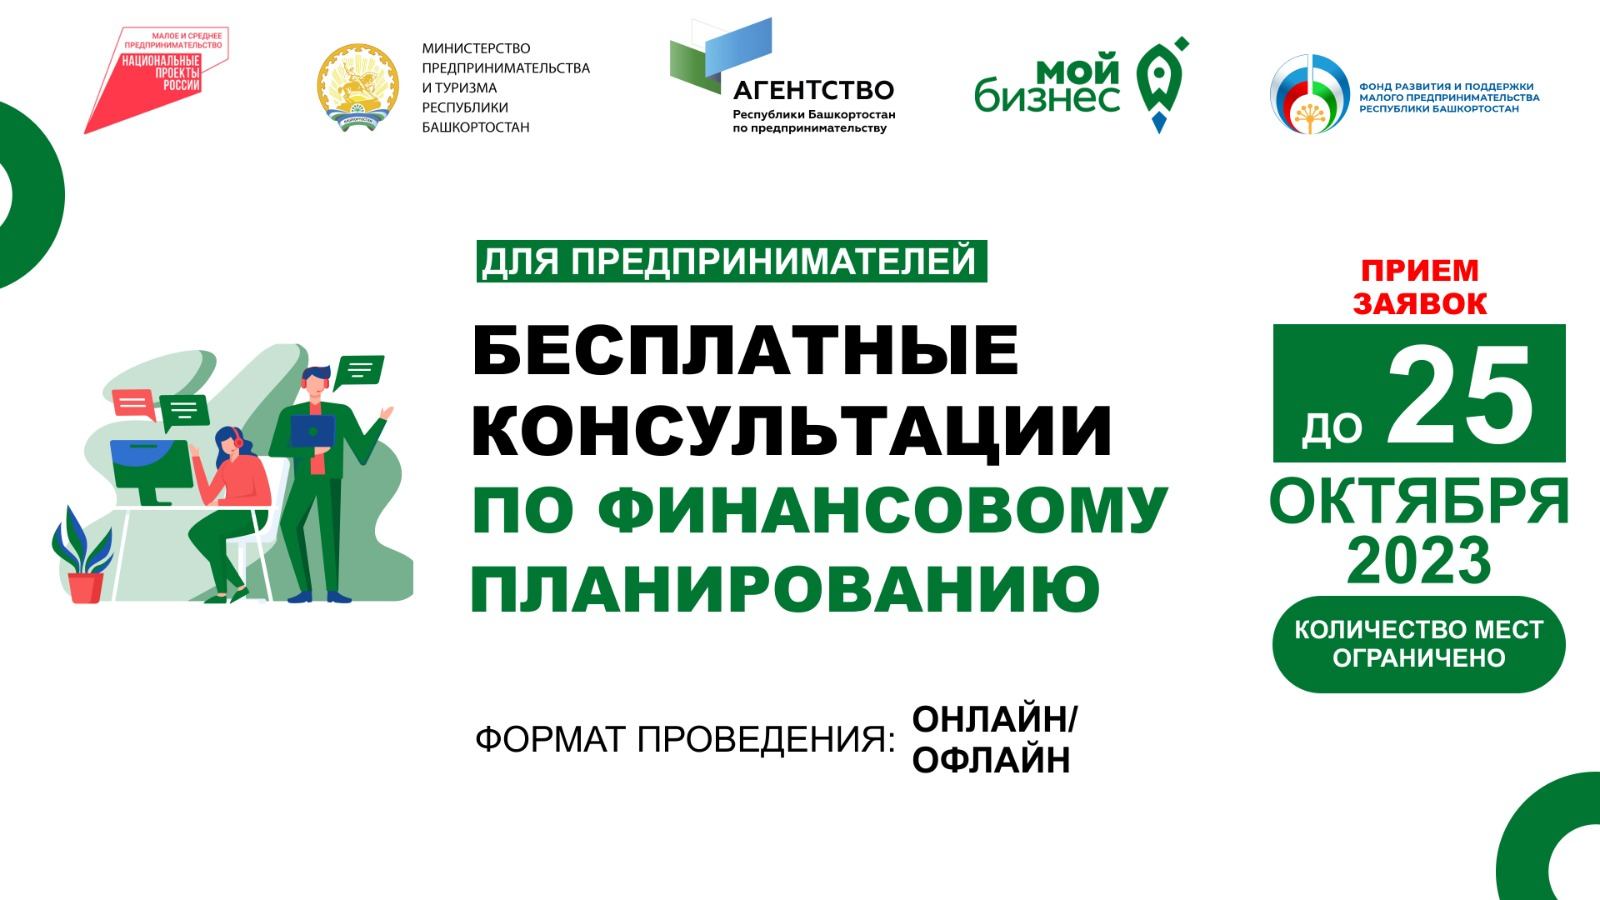 В Республике Башкортостан объявлен прием заявок на оказание консультаций по вопросам финансового планирования